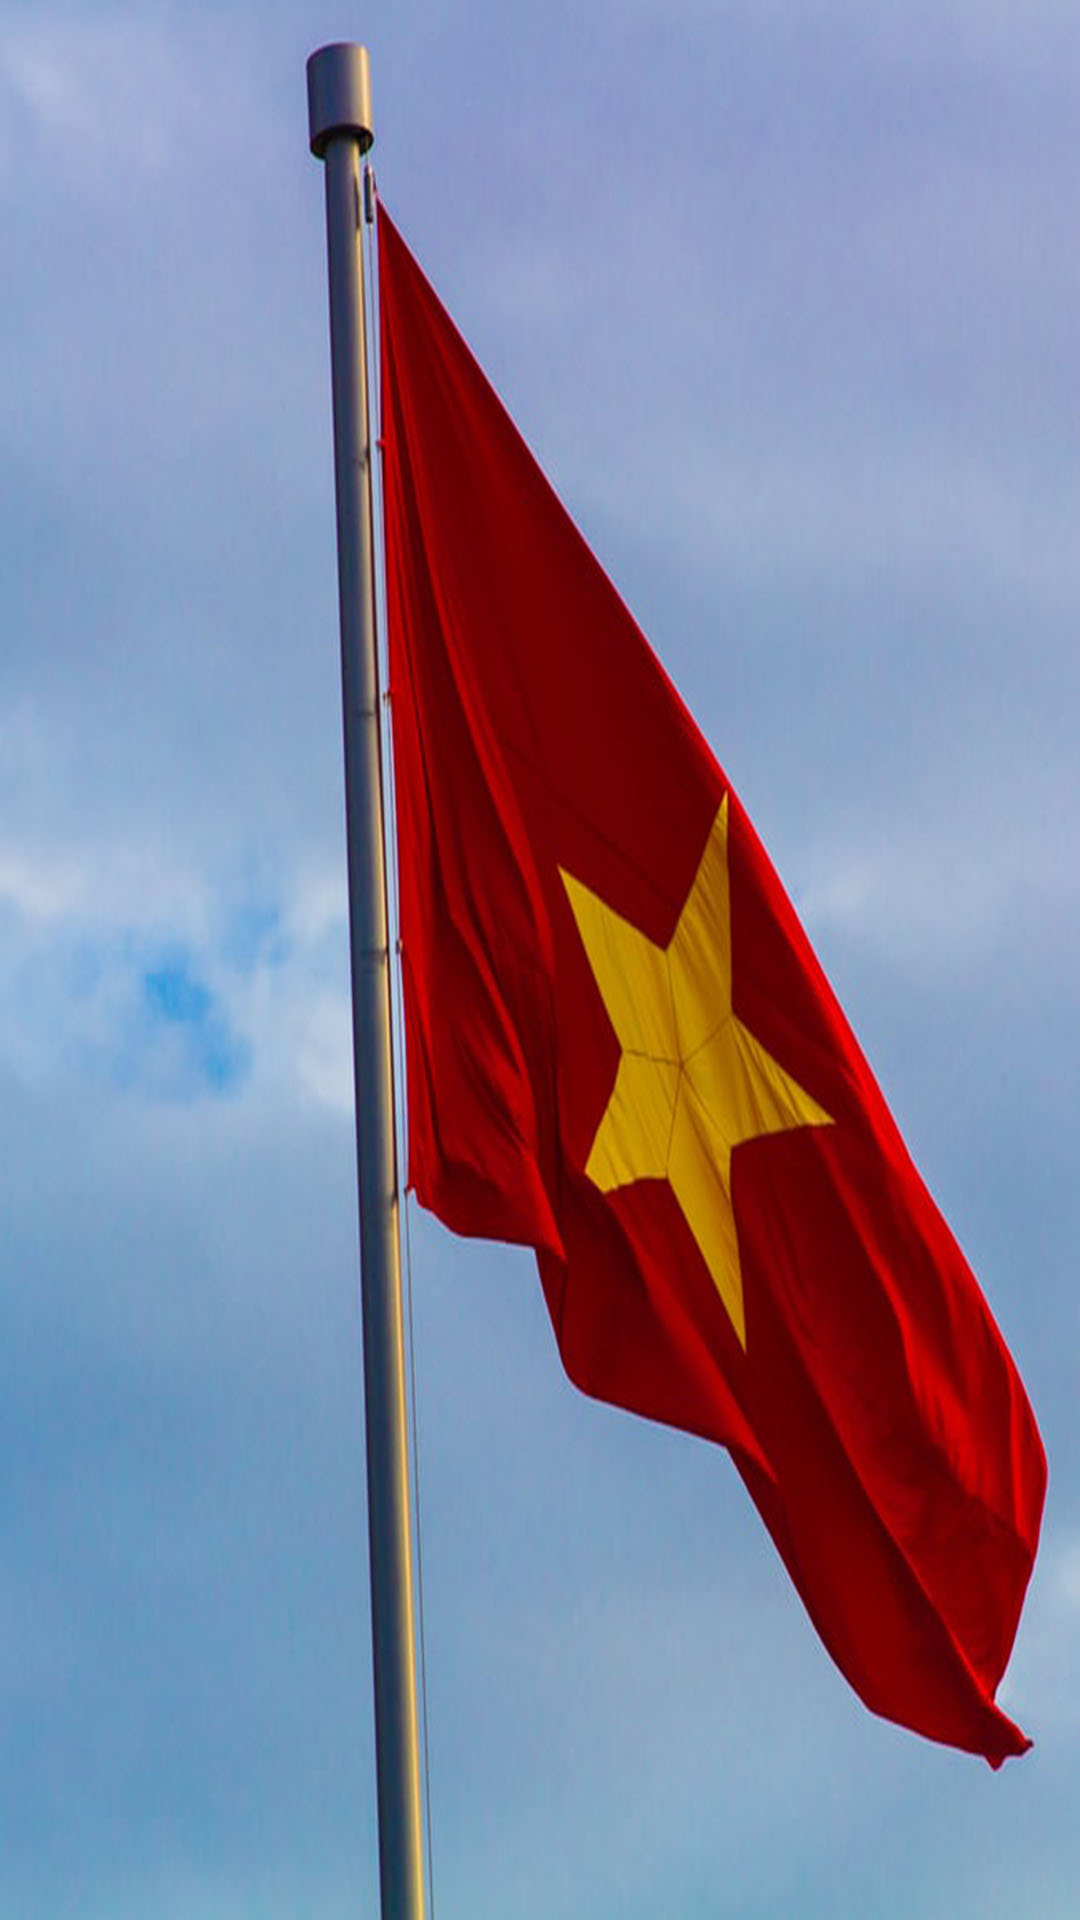 Hình nền cờ Việt Nam 2024 sẽ làm chủ đề tuyệt vời cho bất kỳ trang web hoặc thiết bị nào của bạn. Thể hiện tình yêu, lòng tự hào và truyền thống, hình ảnh này sẽ giúp bạn thể hiện đẳng cấp và tinh thần dân tộc. Với thiết kế độc đáo, sáng tạo và đẹp mắt, hình nền này sẽ giúp bạn nổi bật và tạo ấn tượng tuyệt vời.